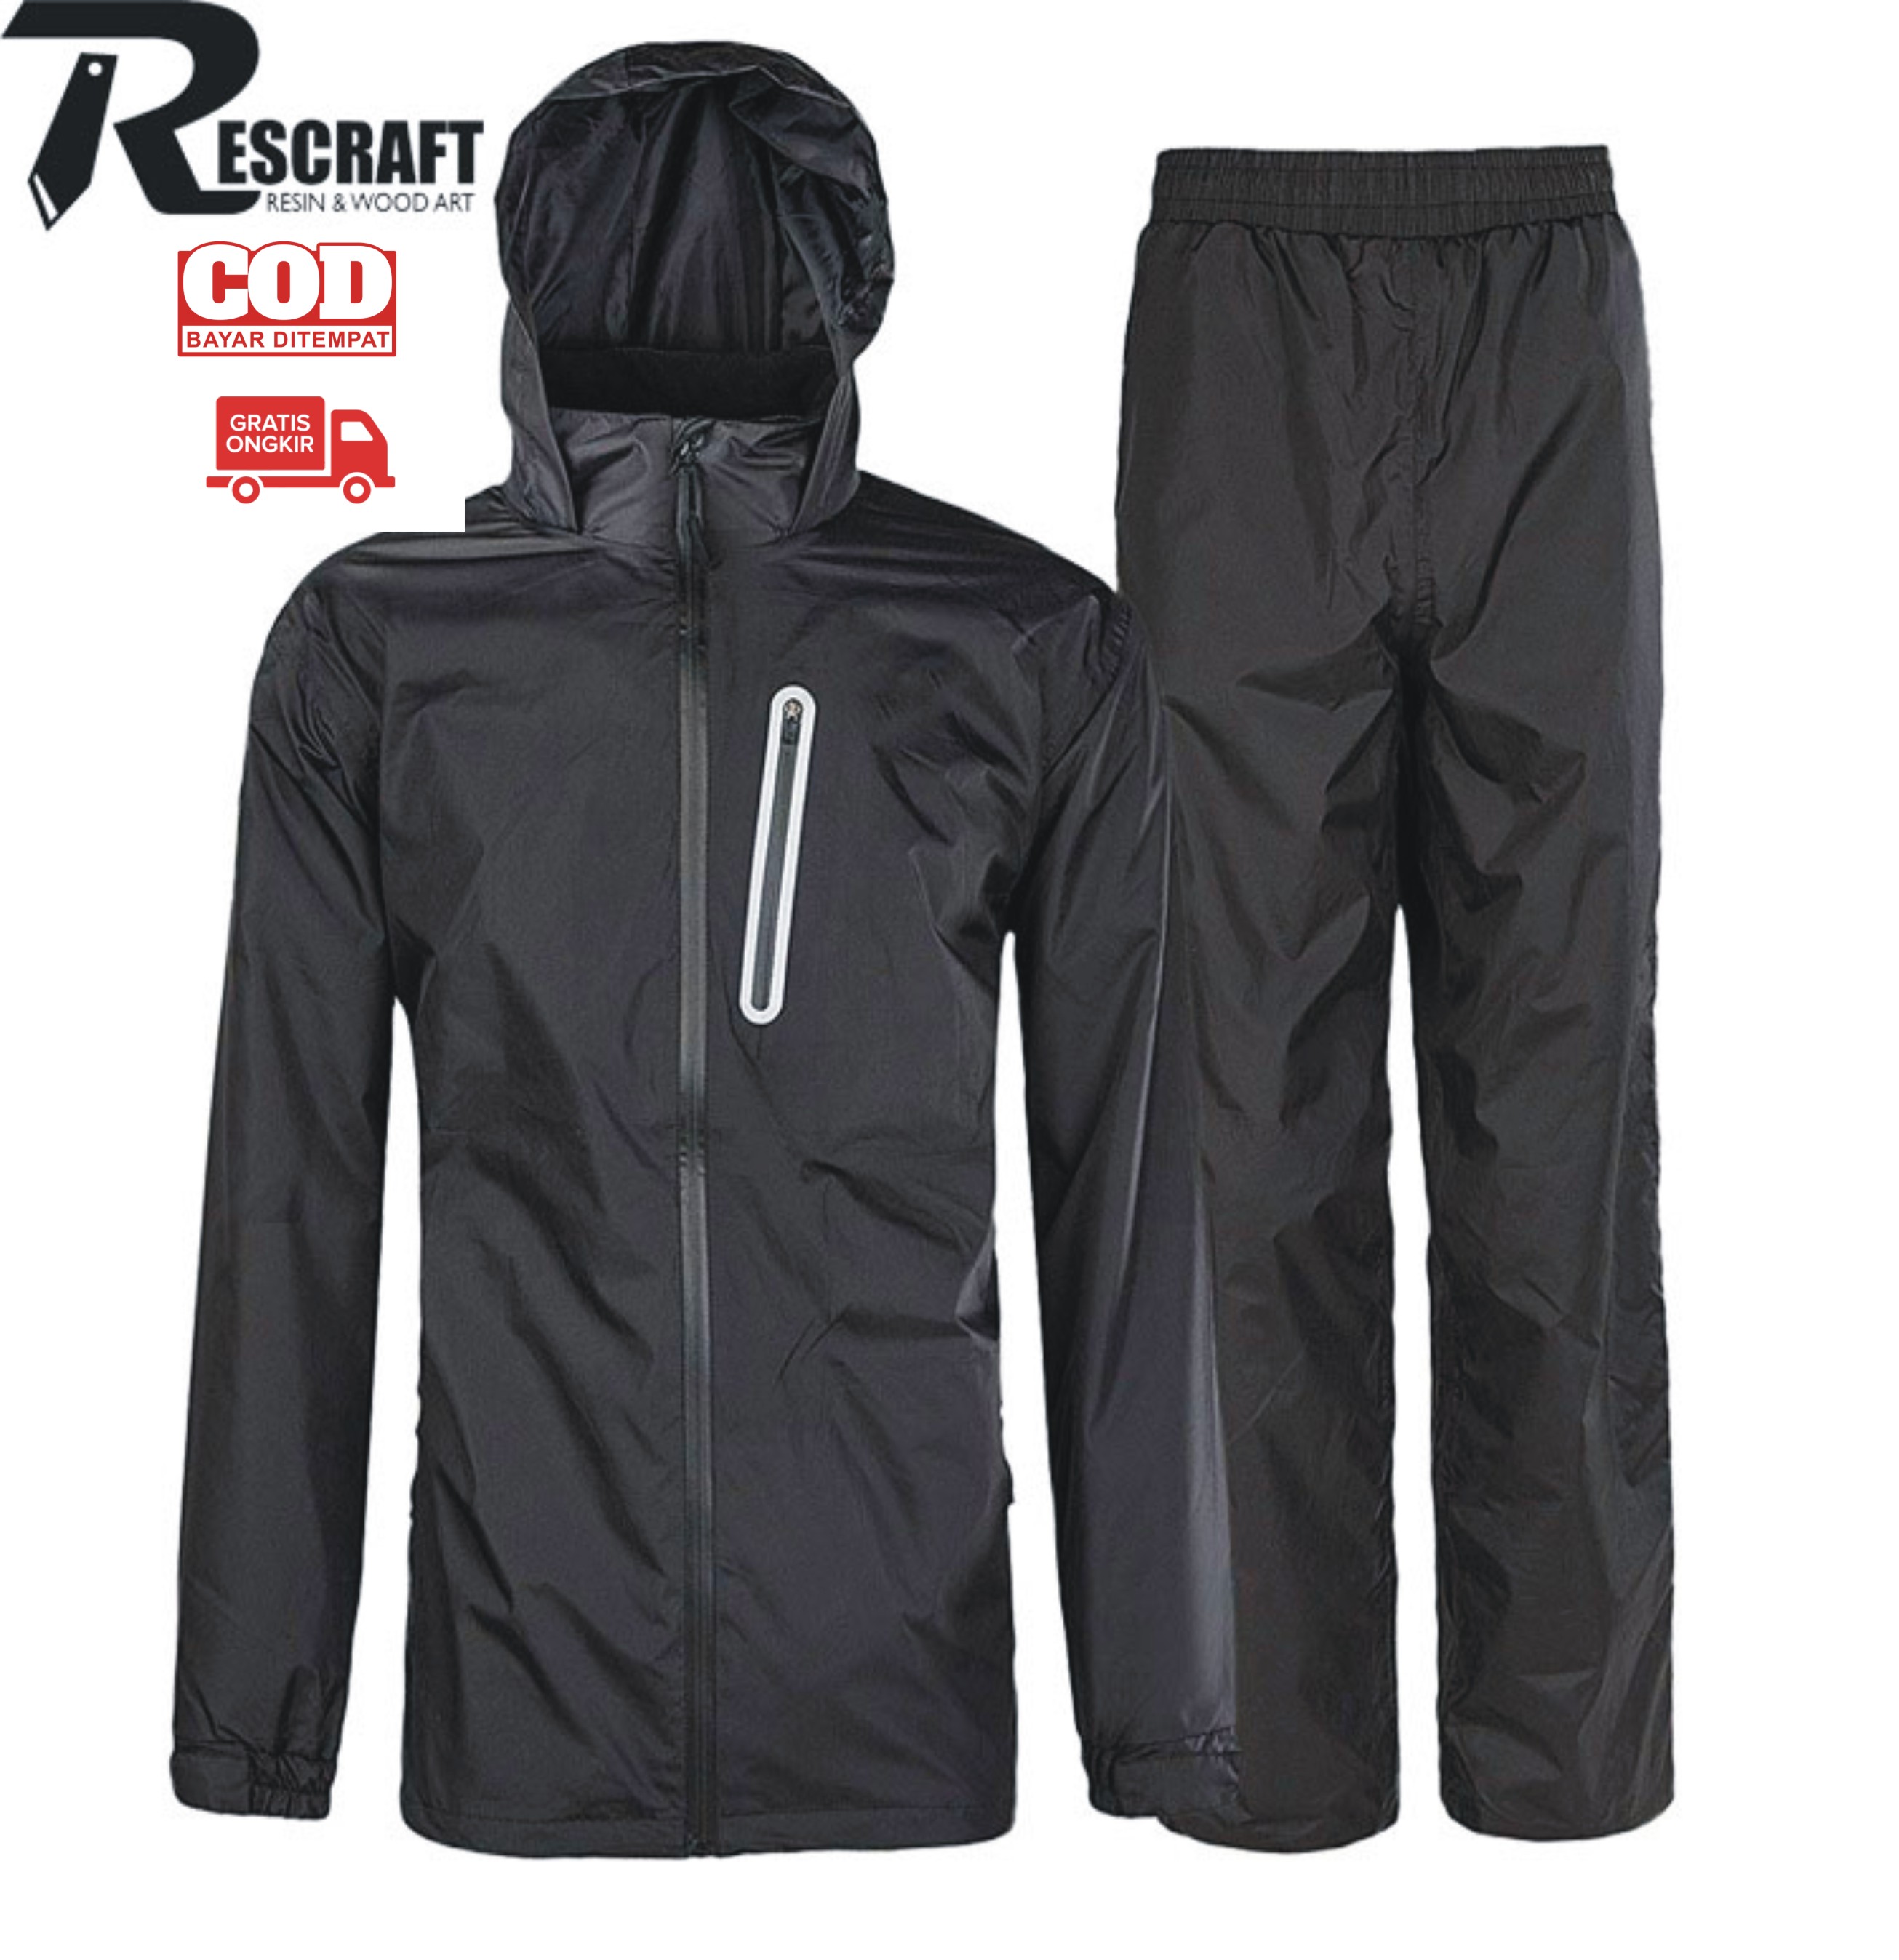 Featured image of post Kera Memakai Jas Hujan Jas hujan training adalah jas hujan setelan yang terdiri dari celana dan jaket yang nyaman saat digunakan karena jas hujan ponco setelan